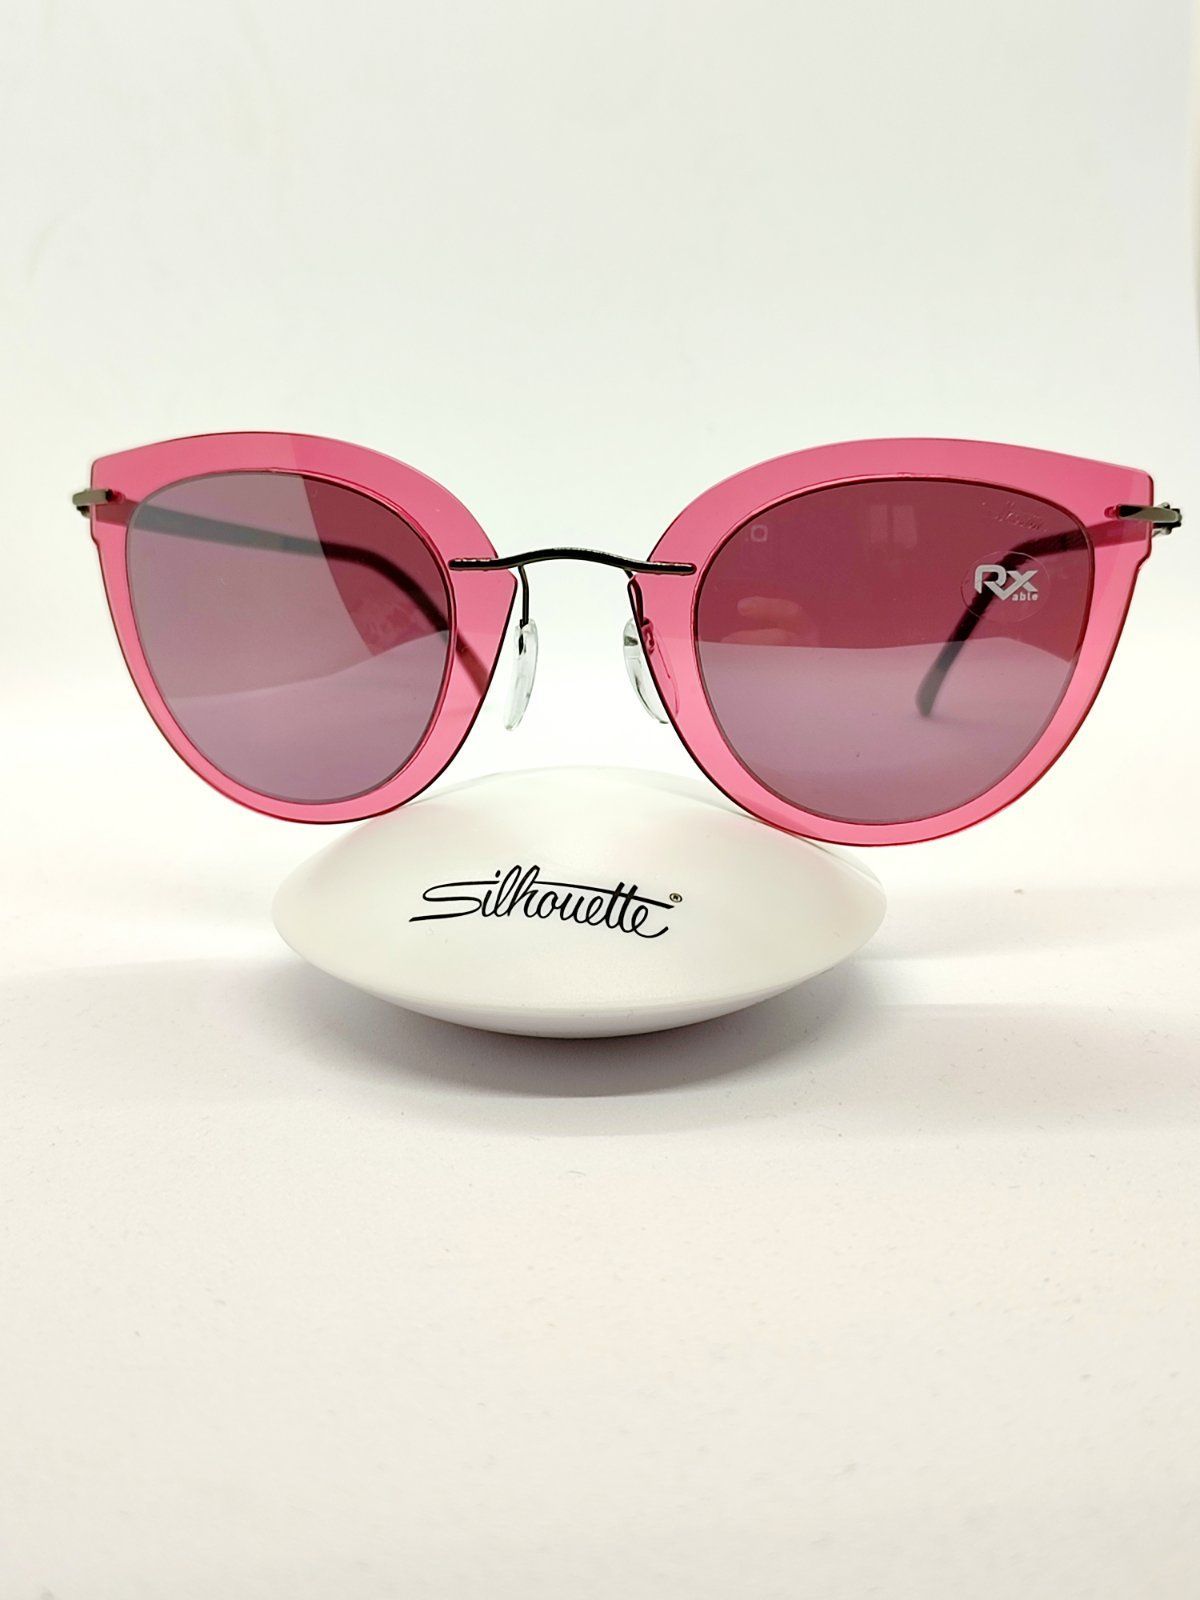 Солнцезащитные очки женские Silhouette 7 розовые